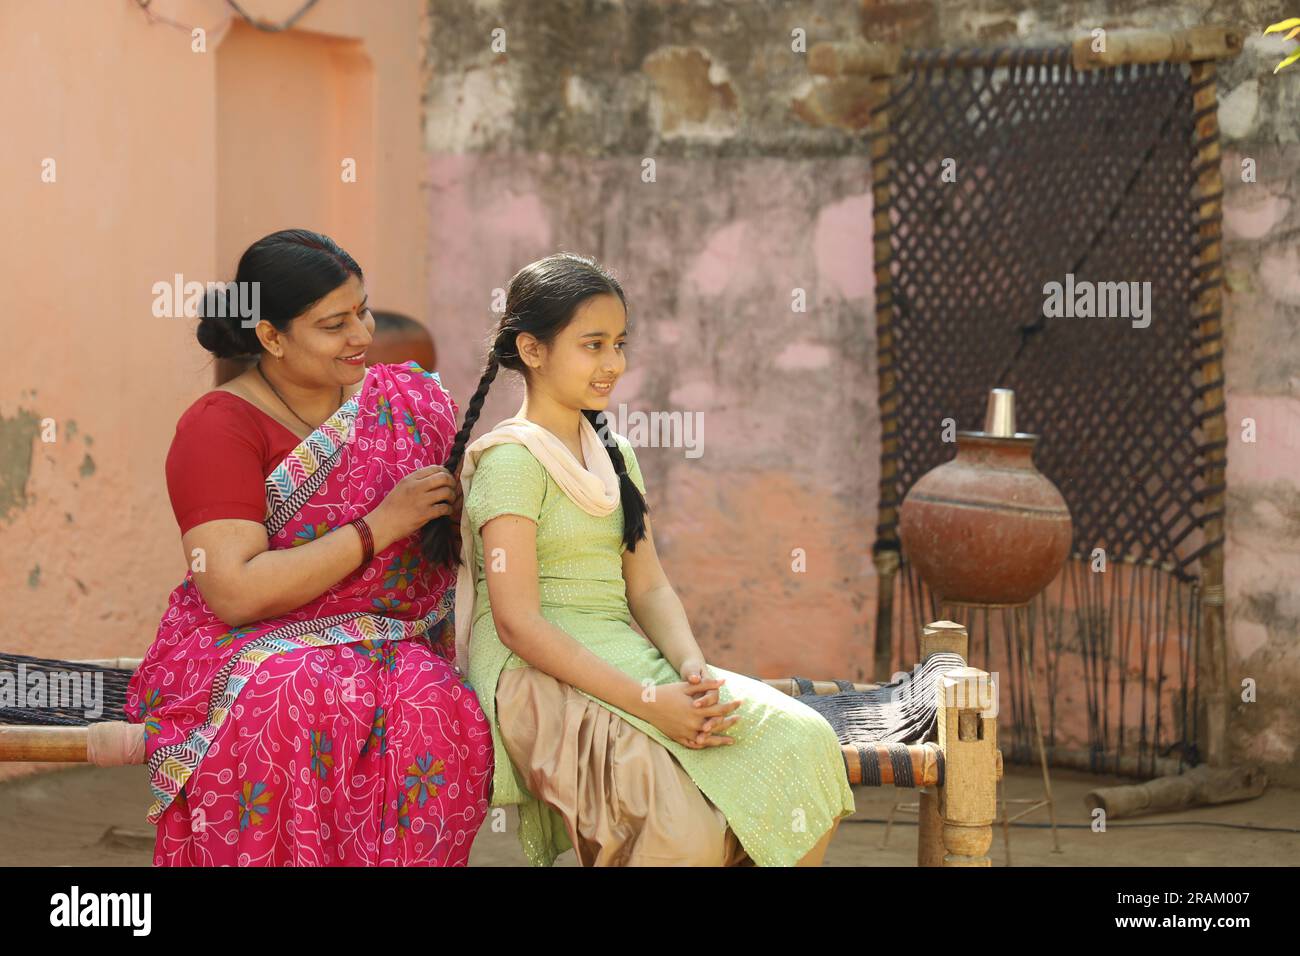 Ritratto della famiglia contadina indiana di una madre e di una figlia seduti insieme nell'abbigliamento di un abitante indiano nel villaggio. Foto Stock